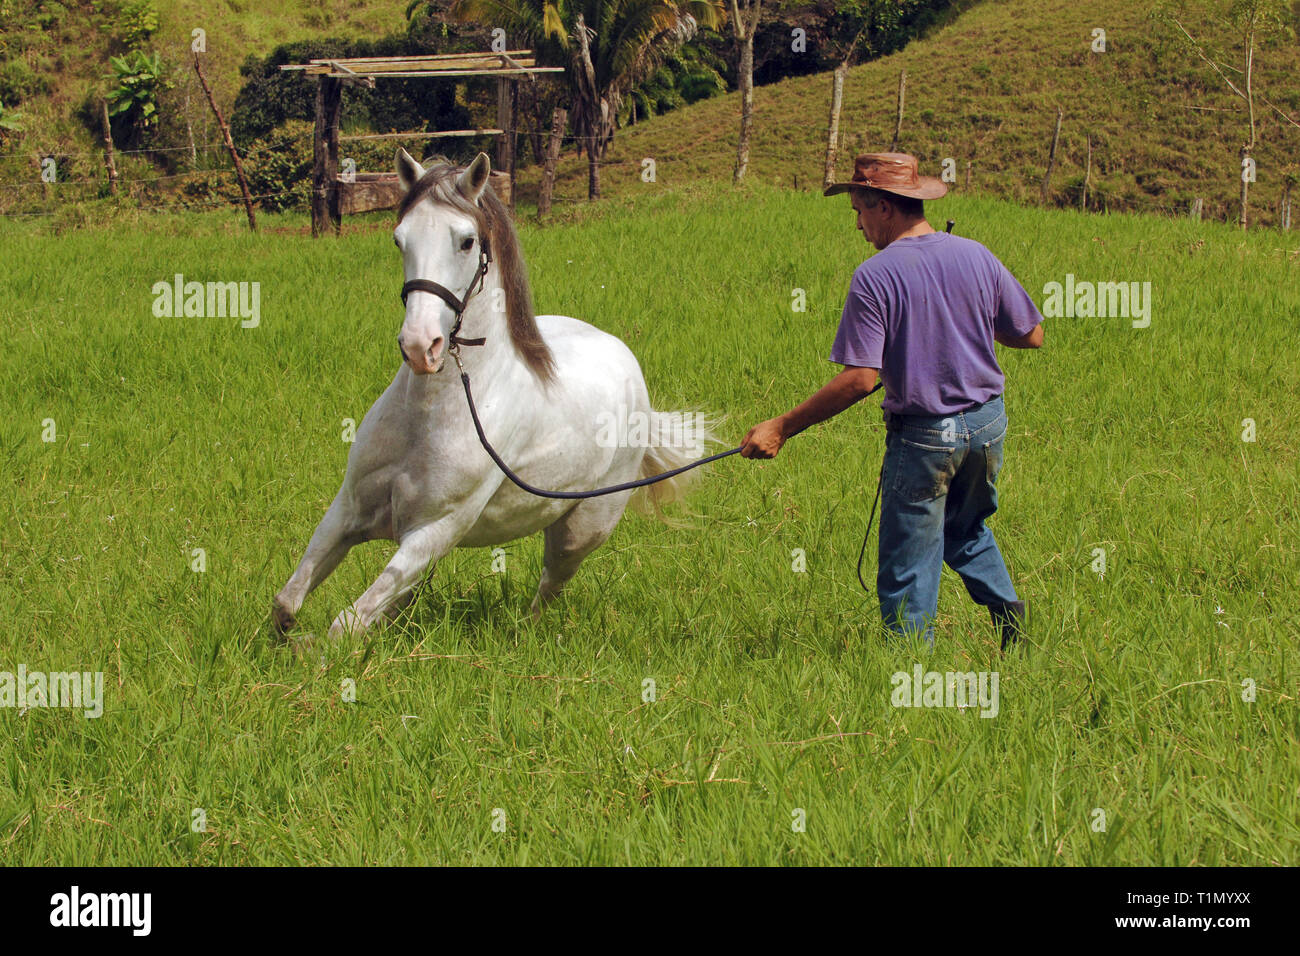 Man drills a Criollo horse, Stud farm, Guanacaste, Costa Rica Stock Photo